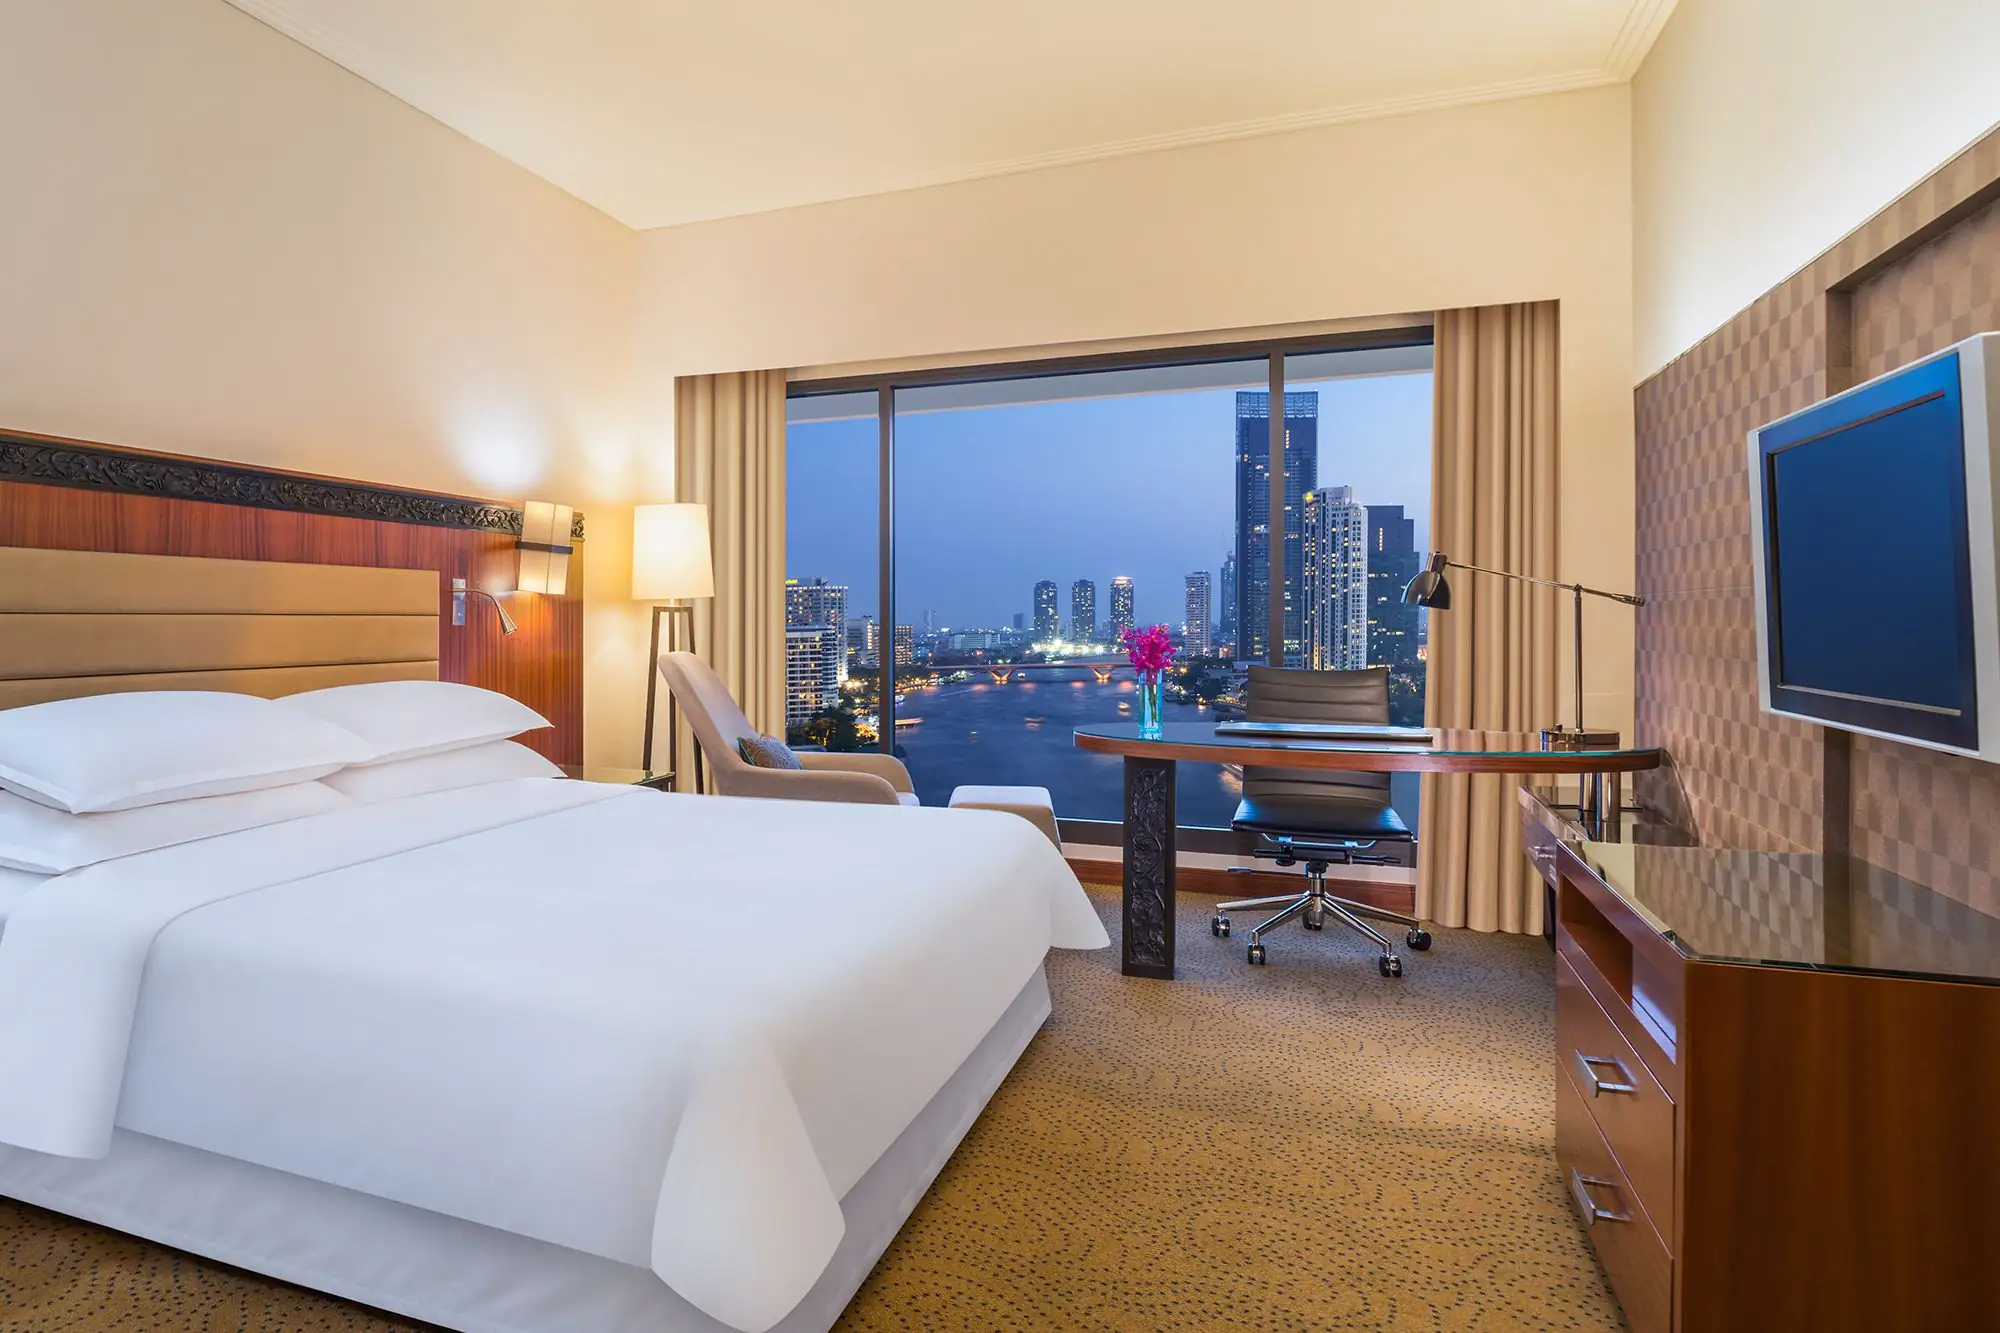 皇家蘭花喜來登大酒店 Royal Orchid Sheraton Hotel Towers 曼谷酒店 曼谷河畔酒店 曼谷5星酒店